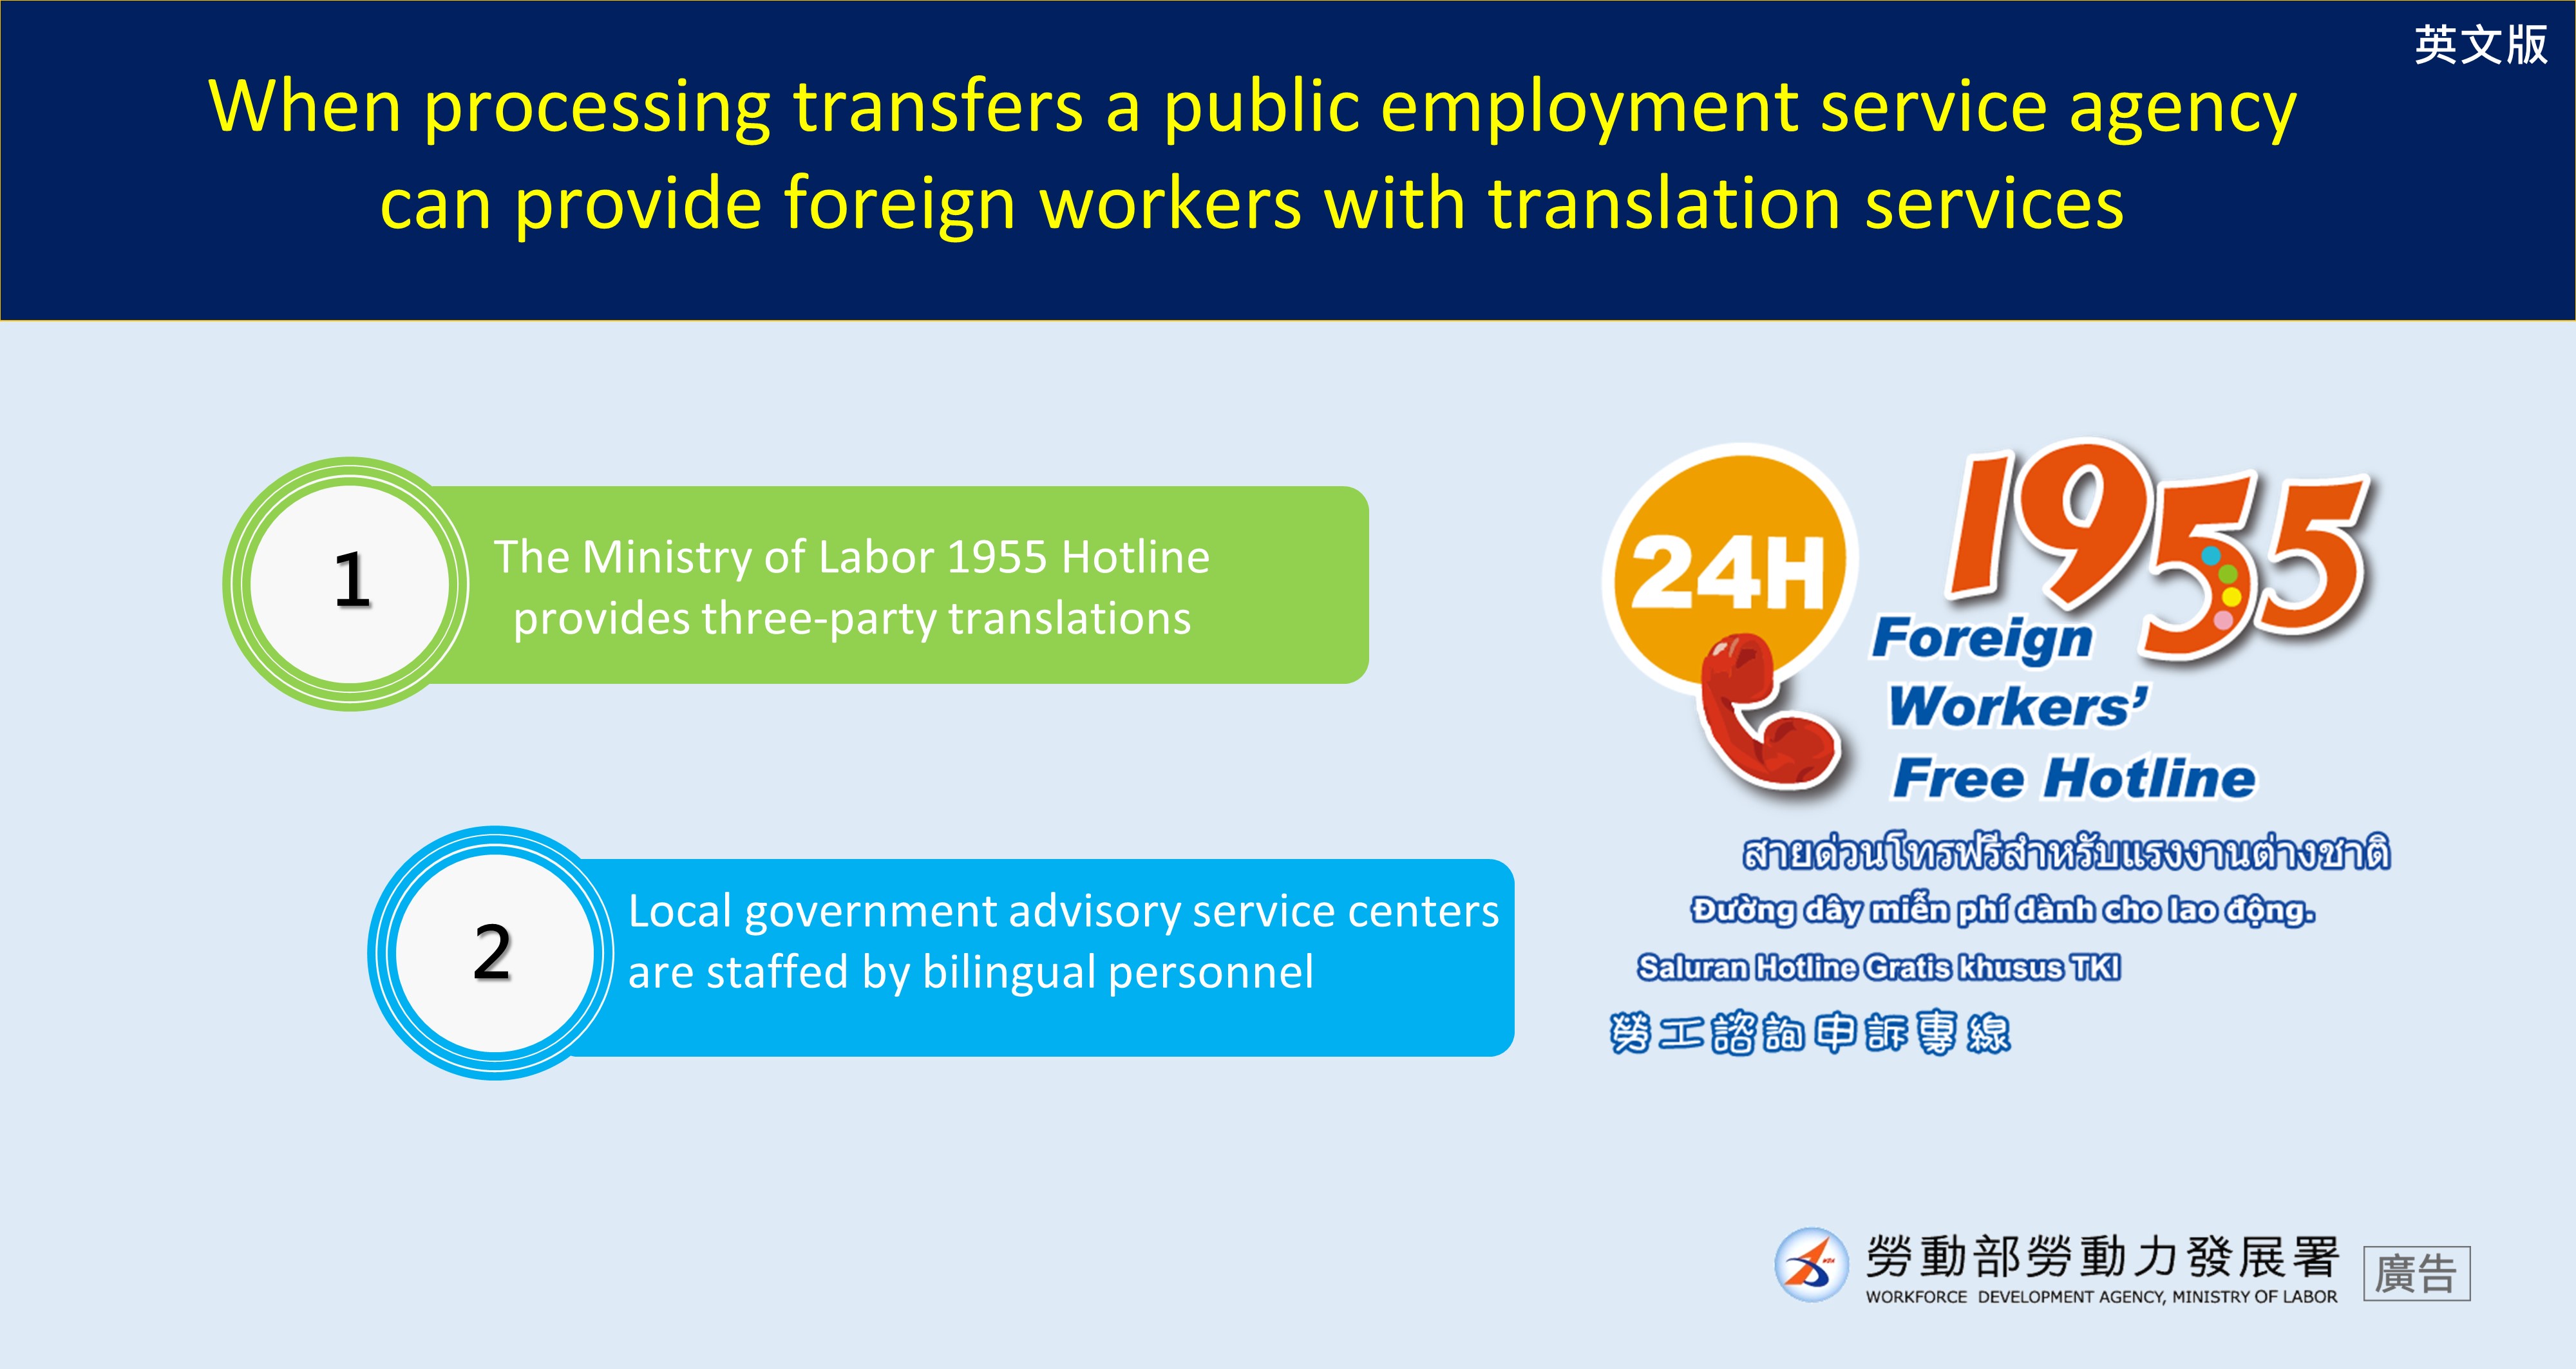 公立就業服務機構辦轉換可提供移工通譯服務-英文.JPG